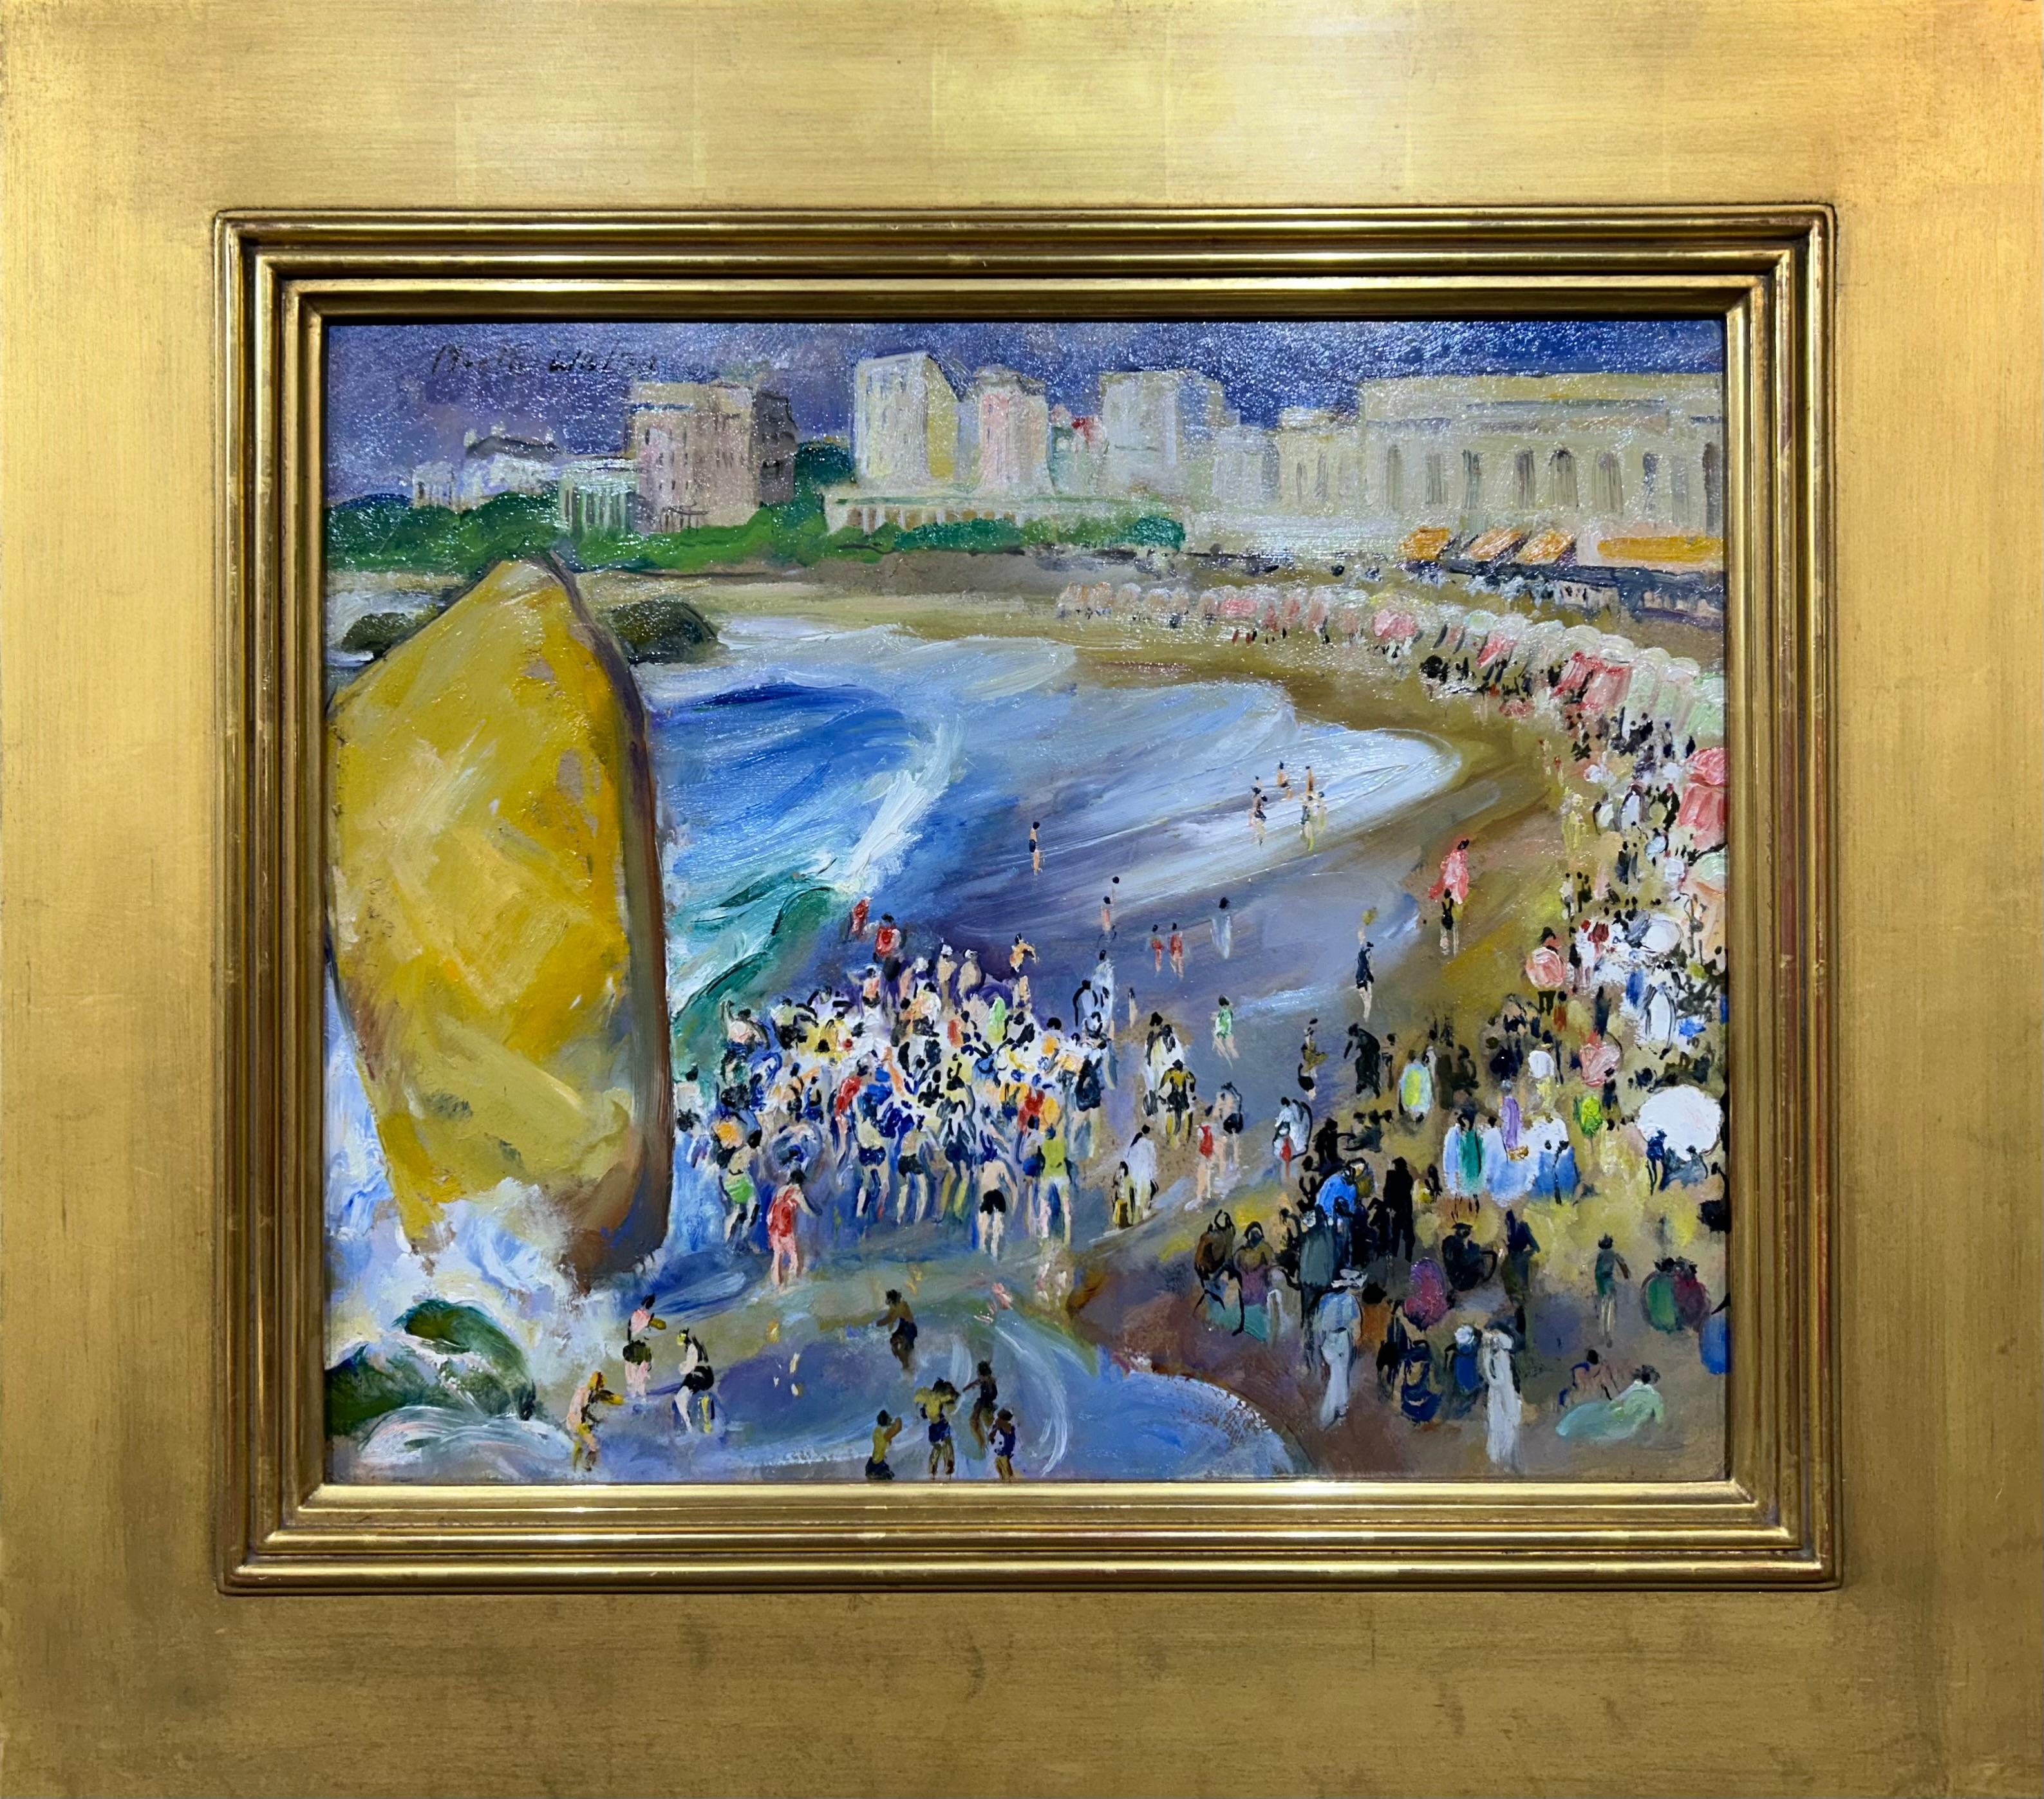 Martha Walter Figurative Painting – Bathing by the Big Rock, amerikanische impressionistische Landschaft und Strands- und Strandszene